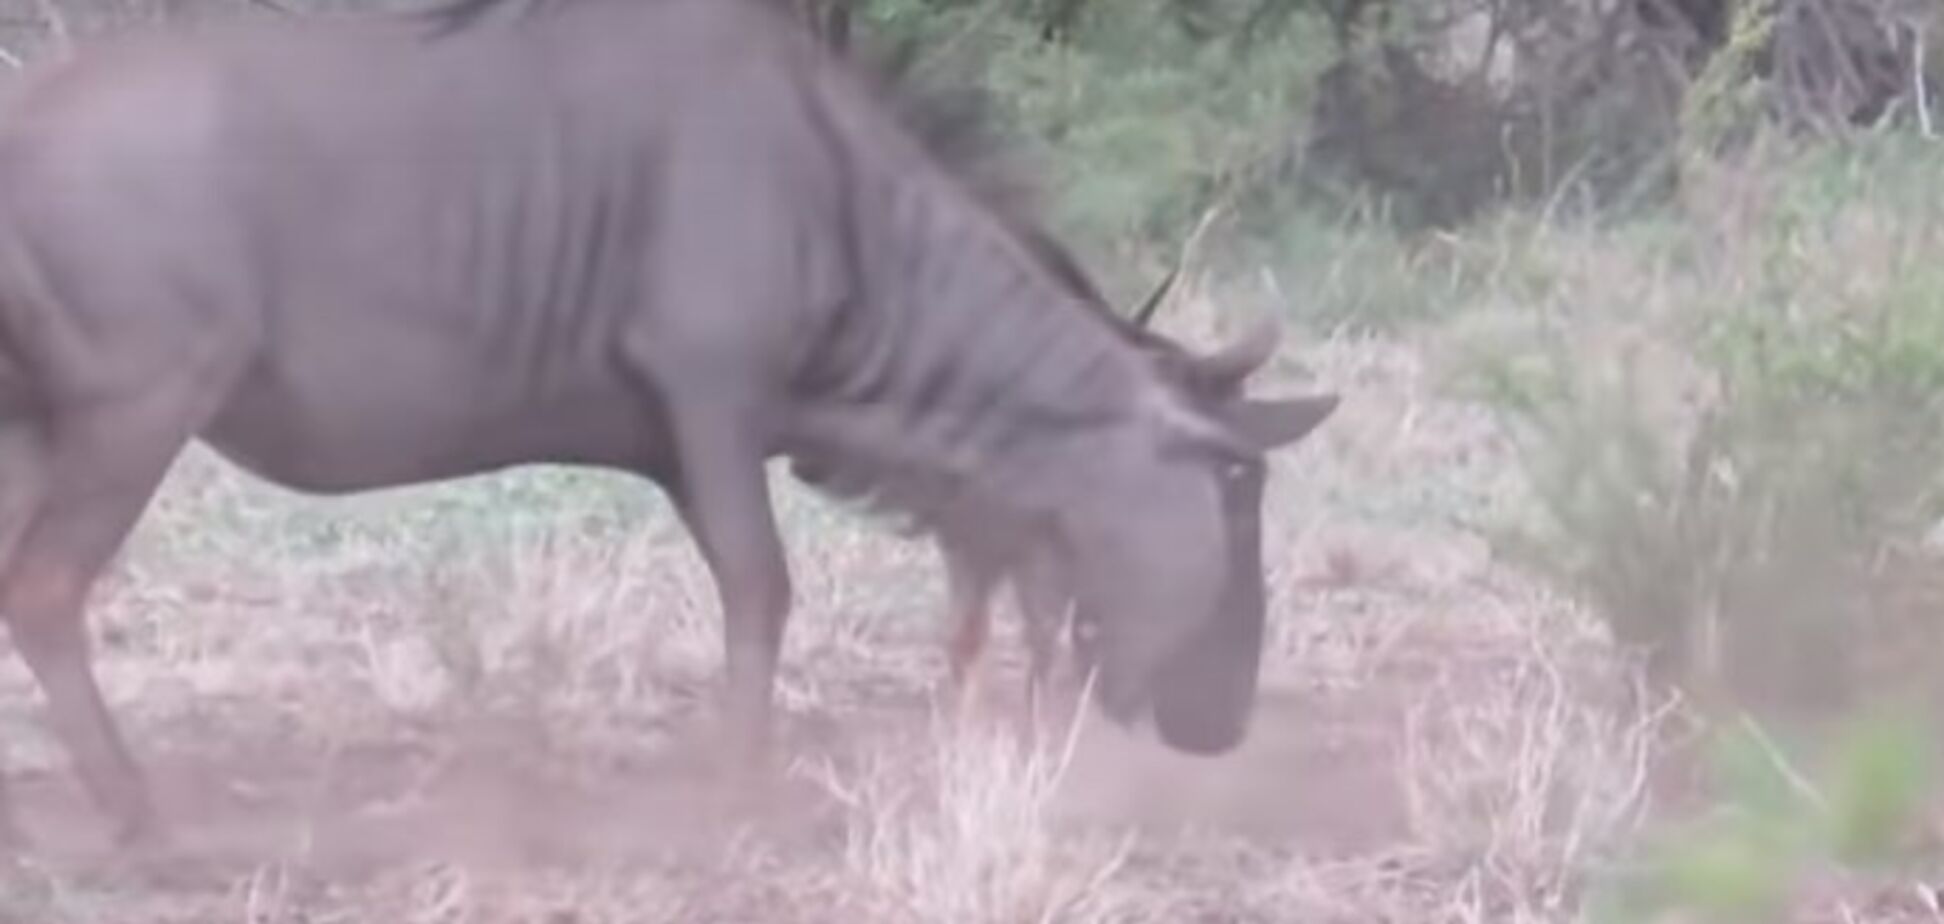 Сражалась до последнего: в сети опубликовали душераздирающее видео битвы антилопы с шакалами